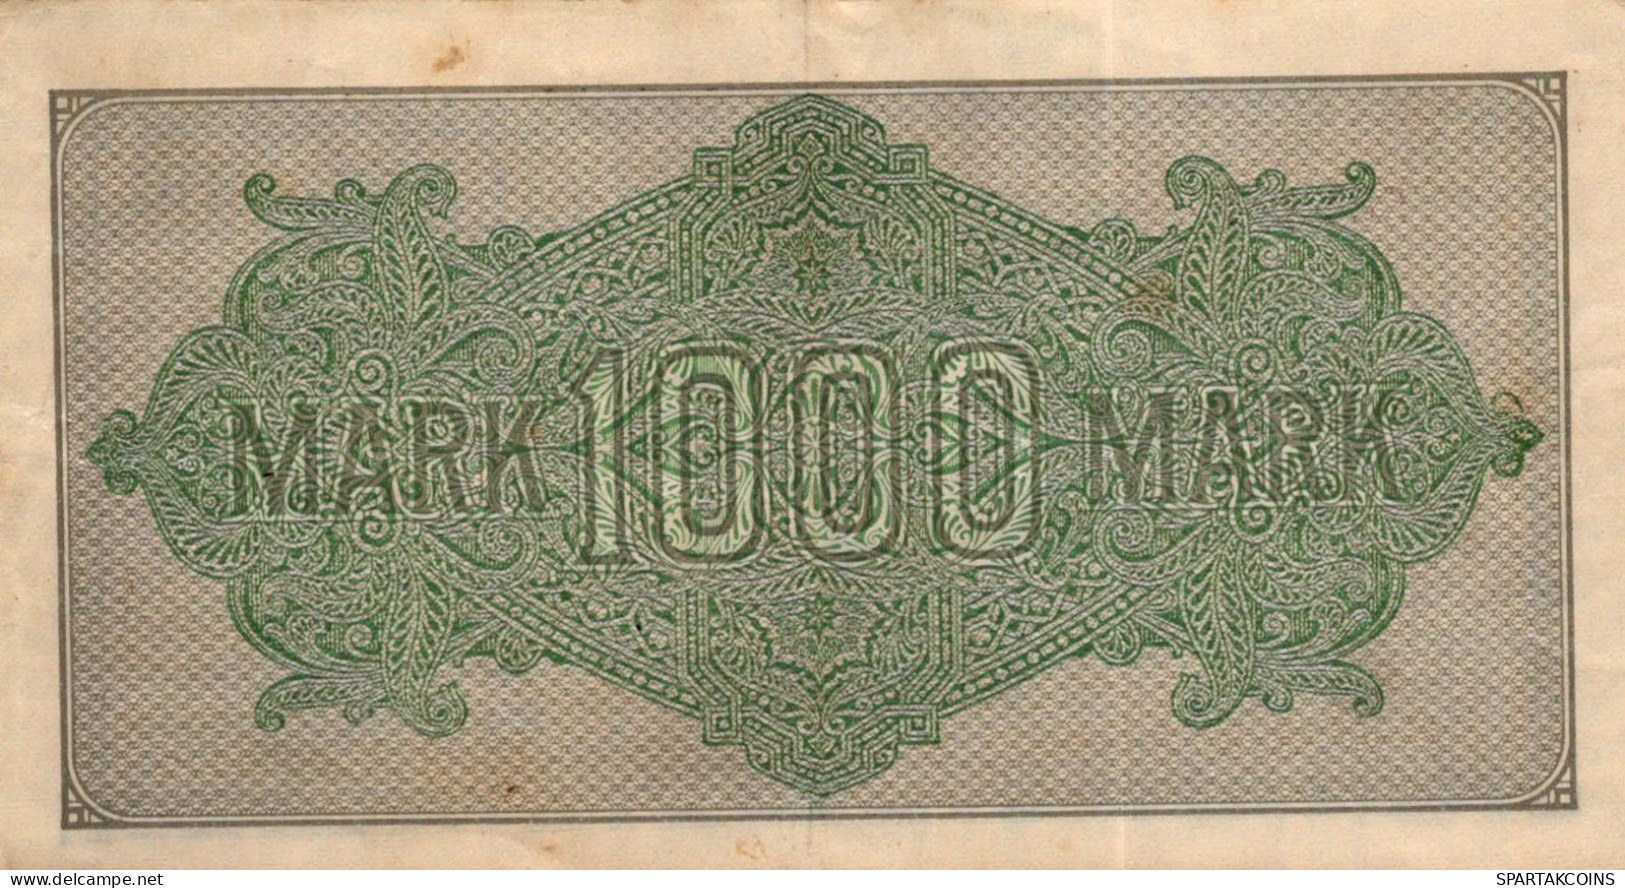 1000 MARK 1922 Stadt BERLIN DEUTSCHLAND Papiergeld Banknote #PL415 - Lokale Ausgaben